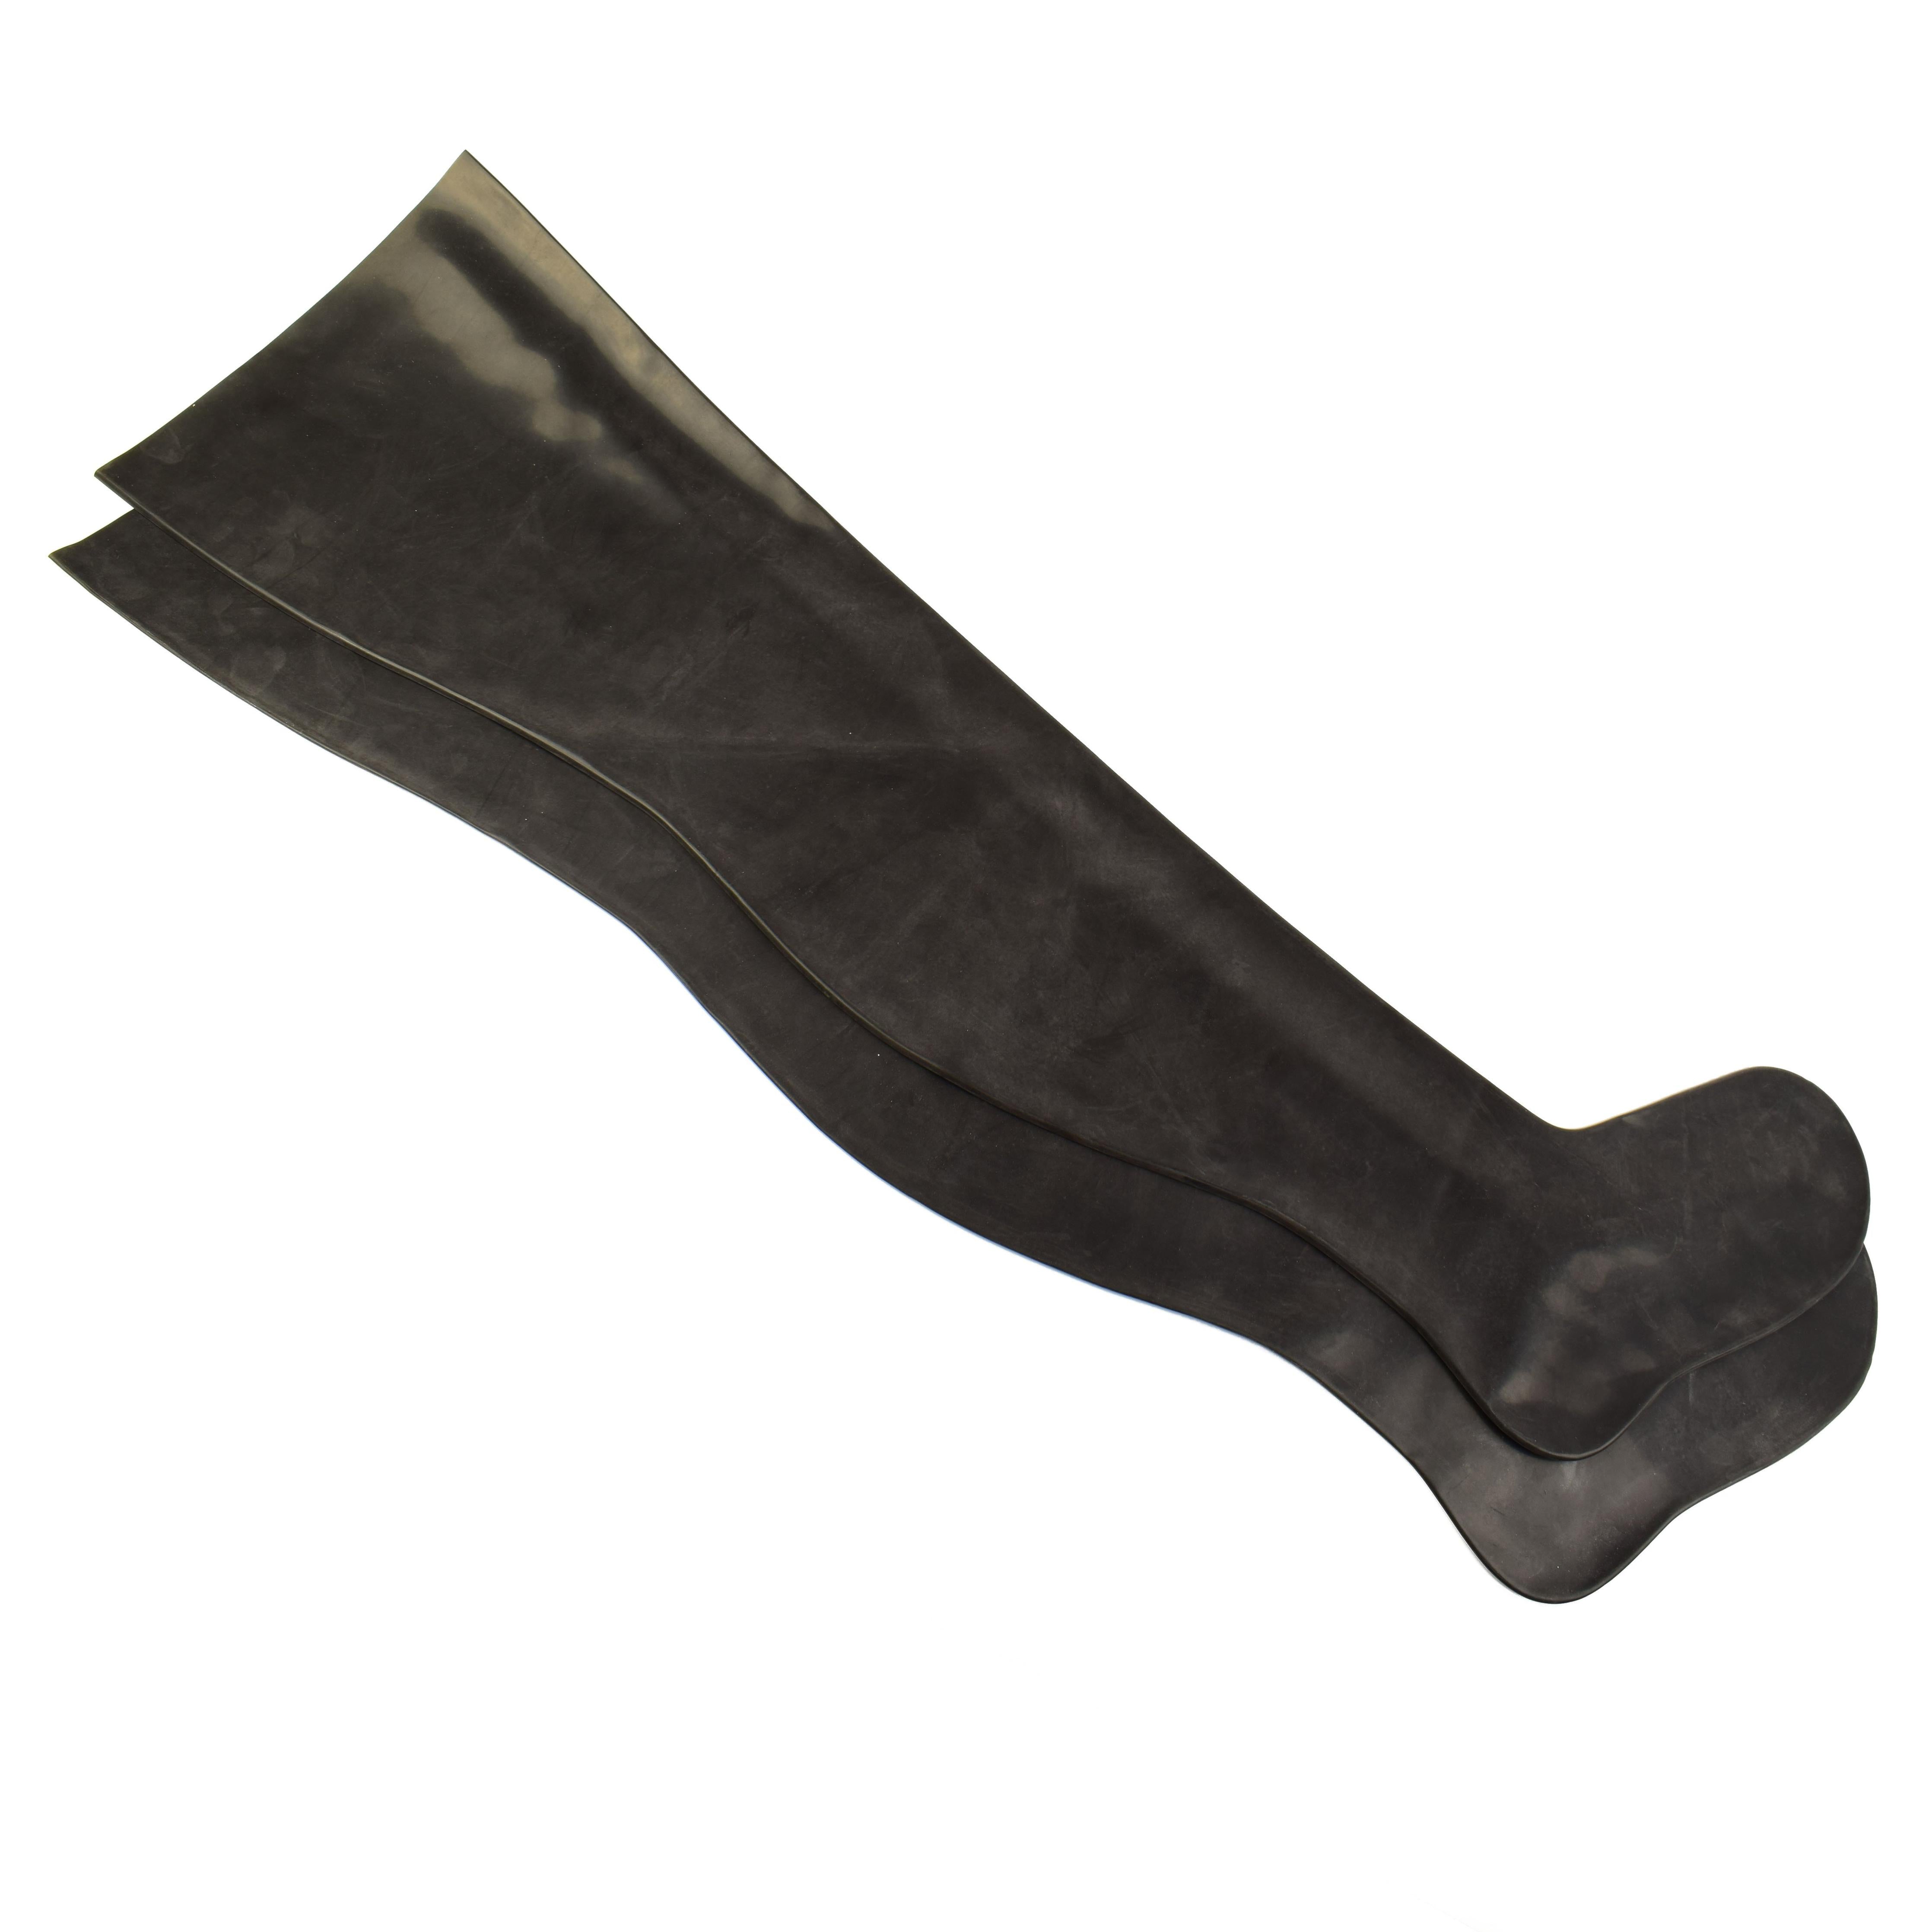 Rubberfashion Latex Strümpfe lang - heavy rubber - Sexy Overknee Oberschenkel Strumpf Socken für Damen und Herren